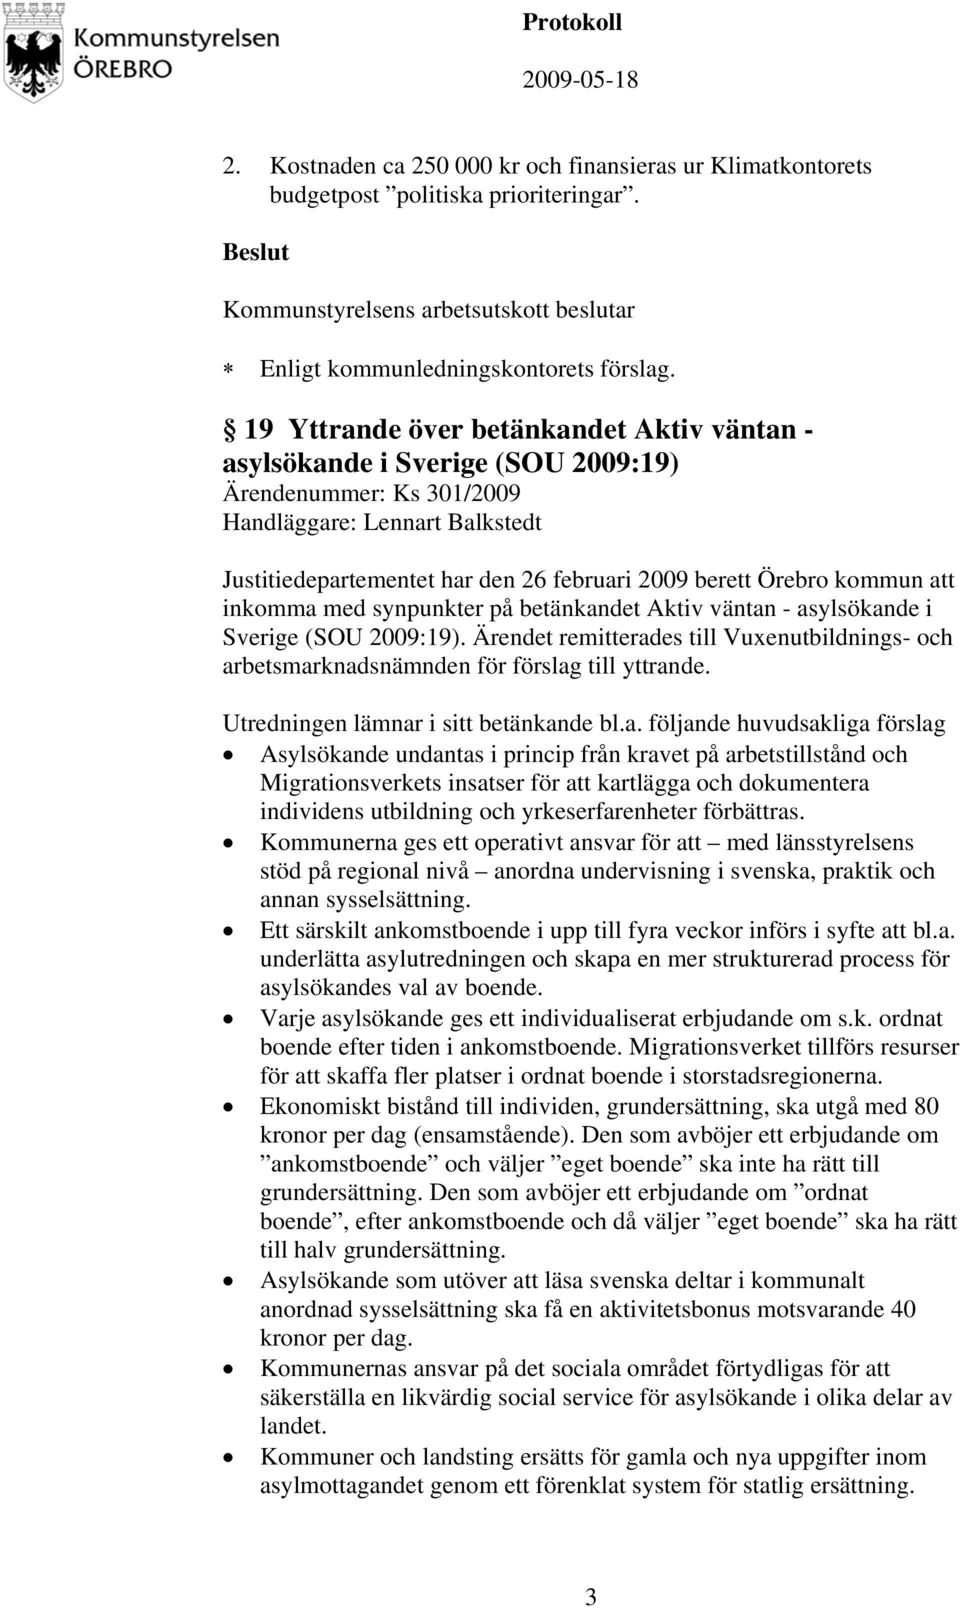 kommun att inkomma med synpunkter på betänkandet Aktiv väntan - asylsökande i Sverige (SOU 2009:19). Ärendet remitterades till Vuxenutbildnings- och arbetsmarknadsnämnden för förslag till yttrande.